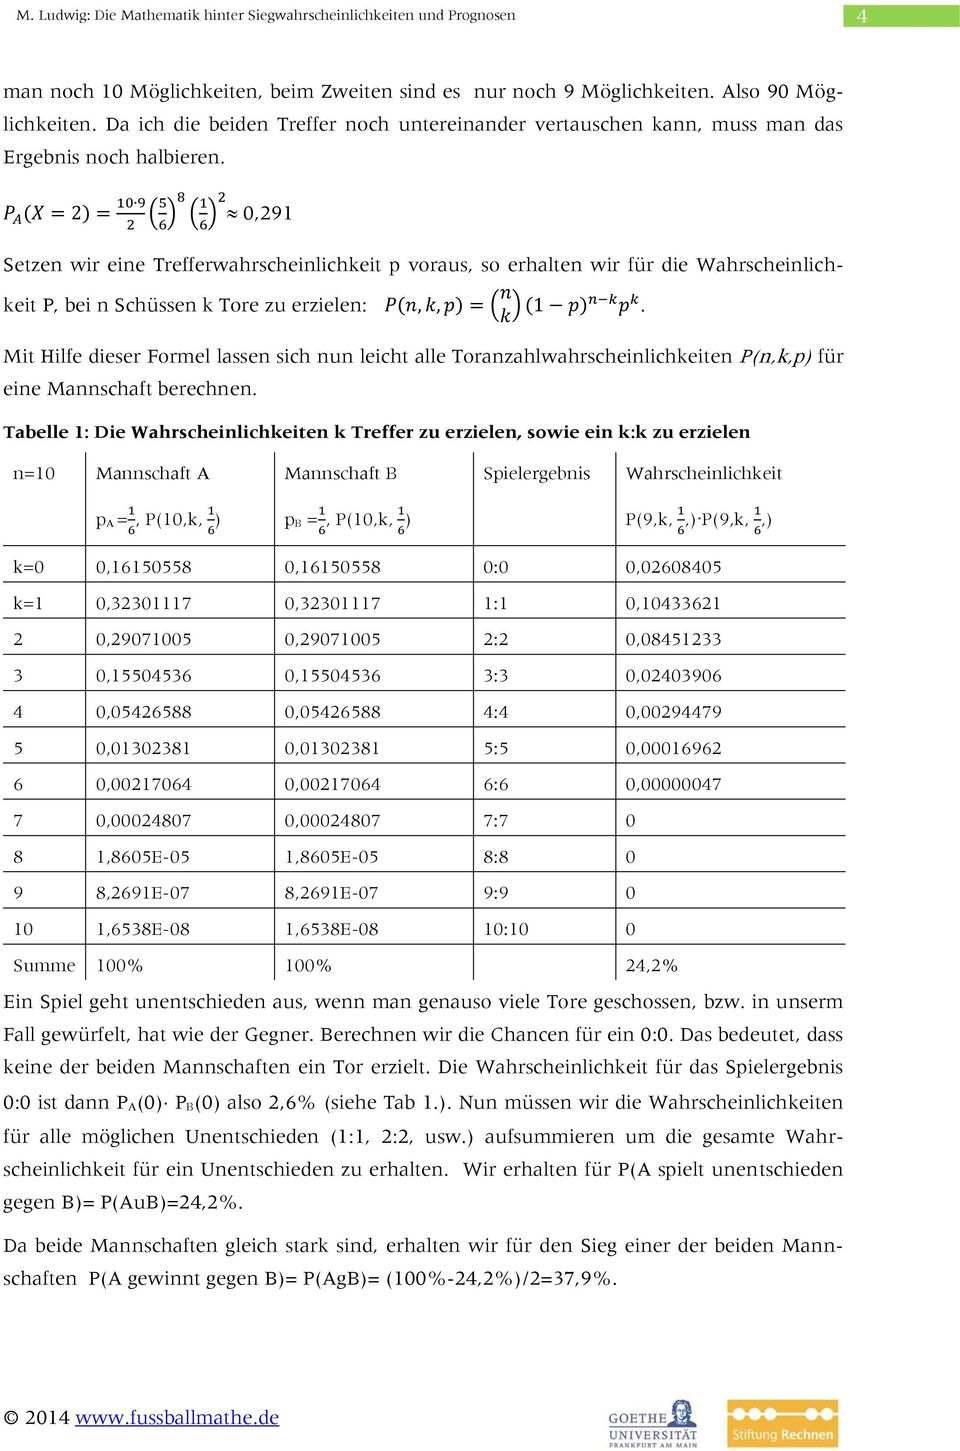 Mit Hilfe dieser Formel lassen sich nun leicht alle Toranzahlwahrscheinlichkeiten P(n,k,p) für eine Mannschaft berechnen.